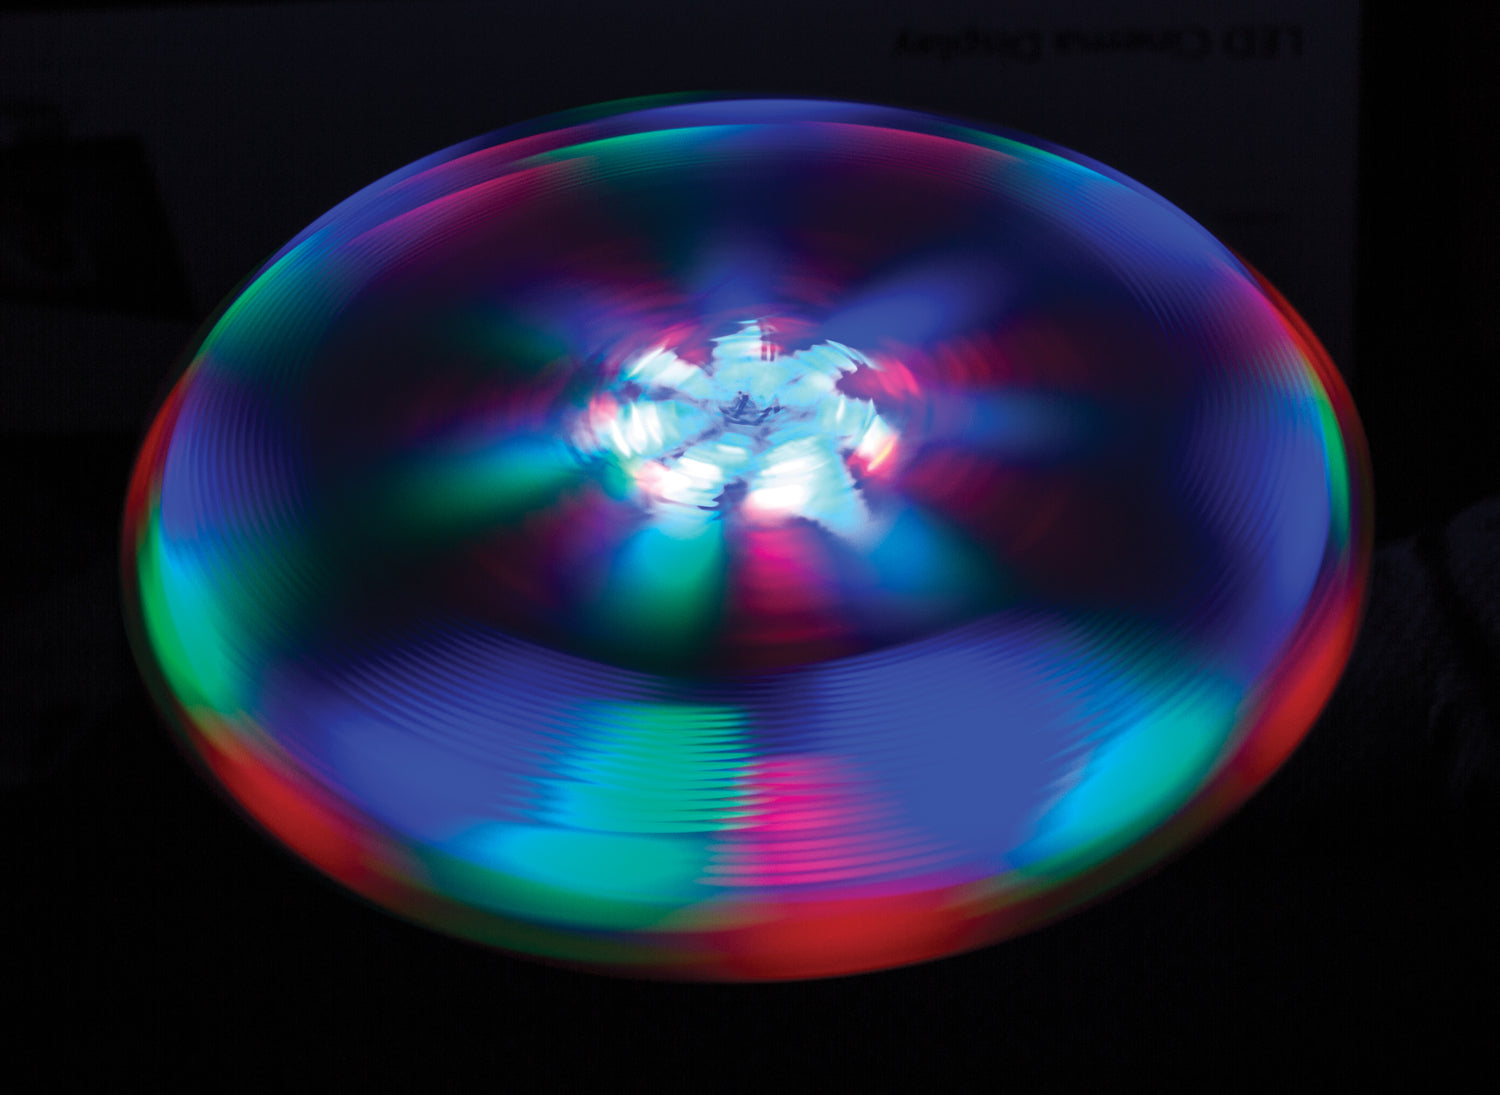 Blaze Light-Up Disc